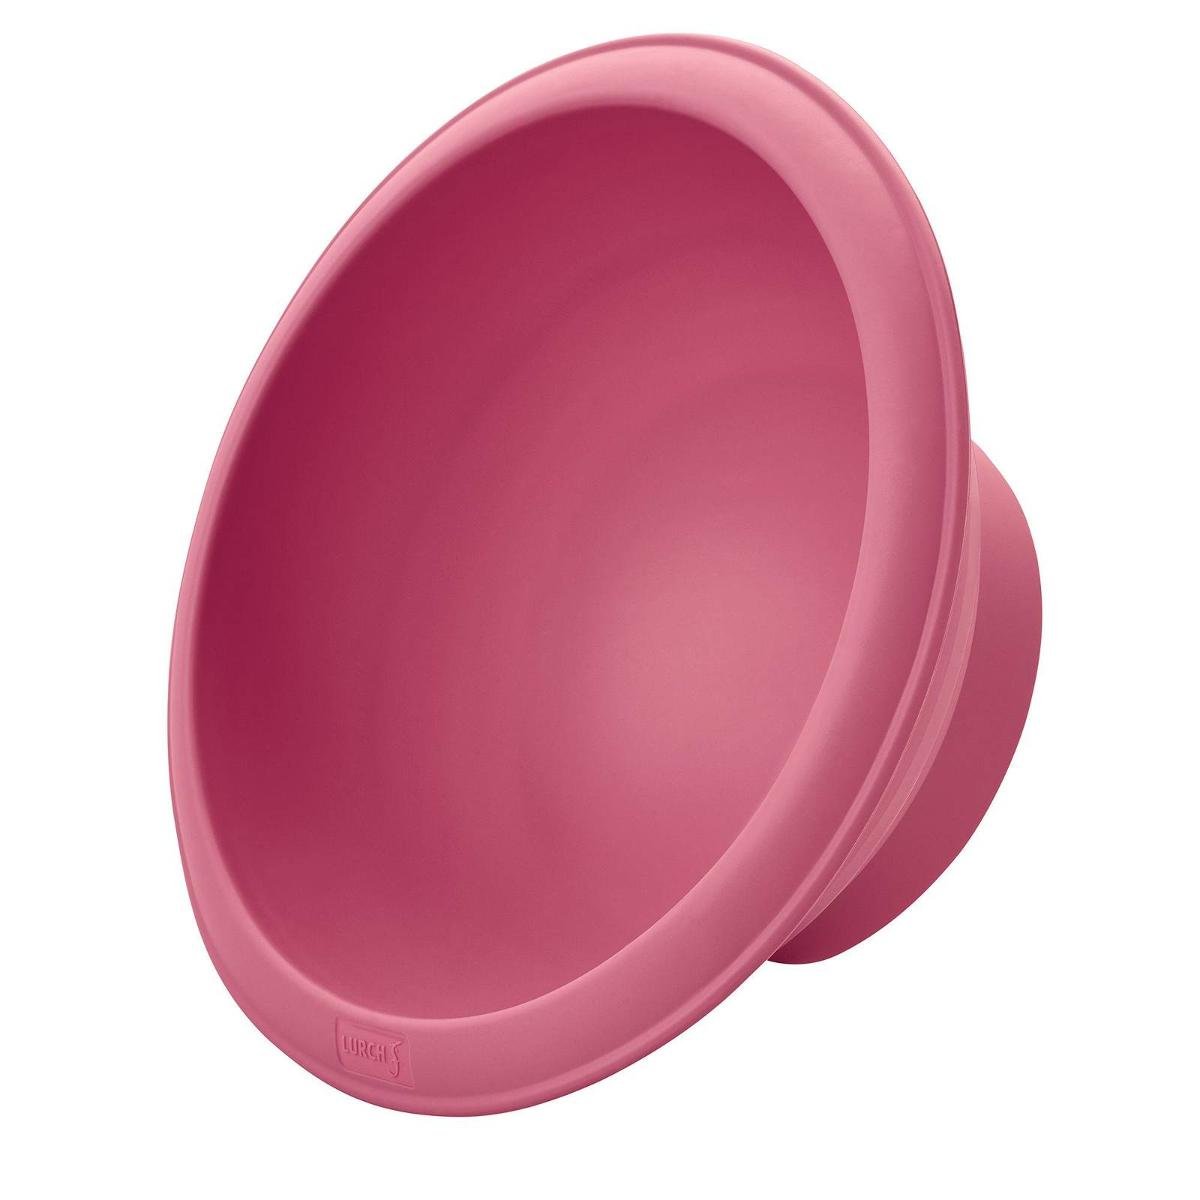 Lurch FlexiForm 83004 półokrągła forma silikonowa, średnica: 18 cm, różowa, wymiary: 23 x 23 x 9,5 cm 83004